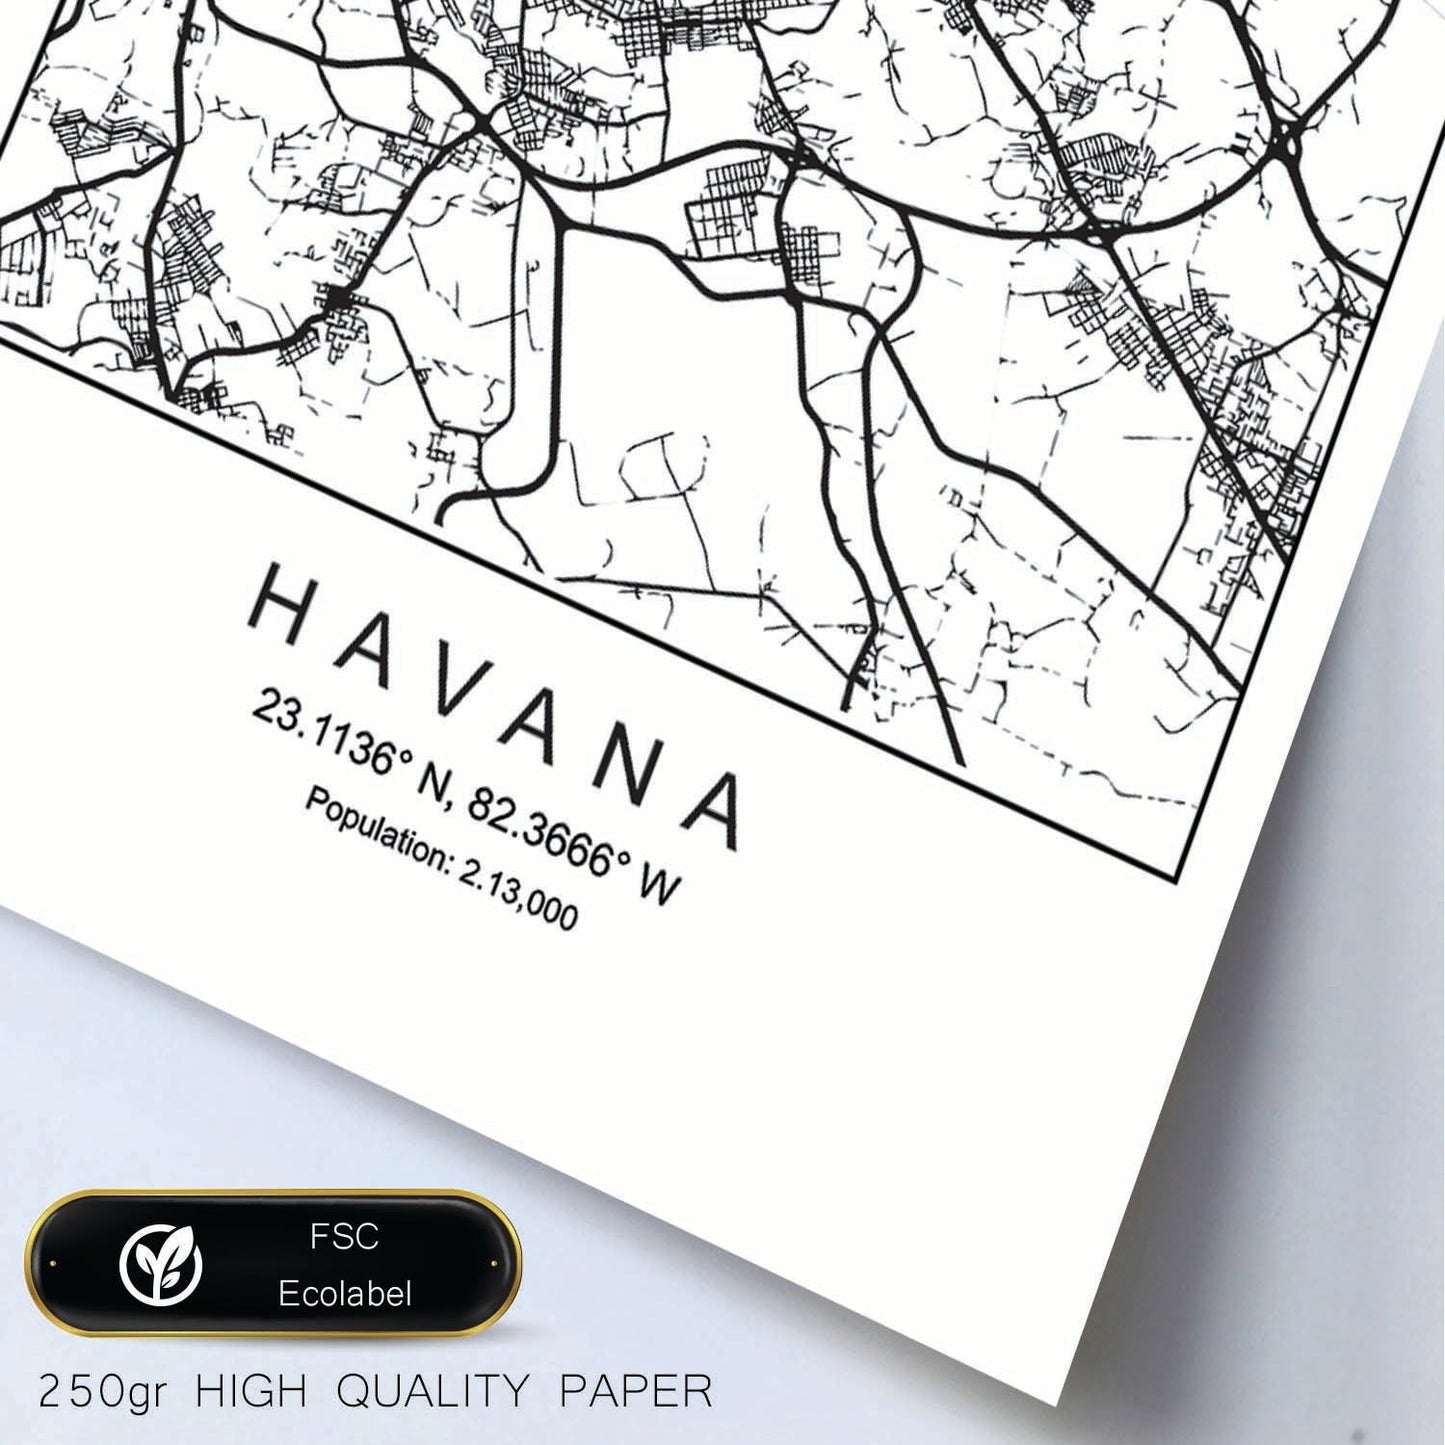 Lámina mapa de la ciudad Havana estilo nordico en blanco y negro.-Artwork-Nacnic-Nacnic Estudio SL